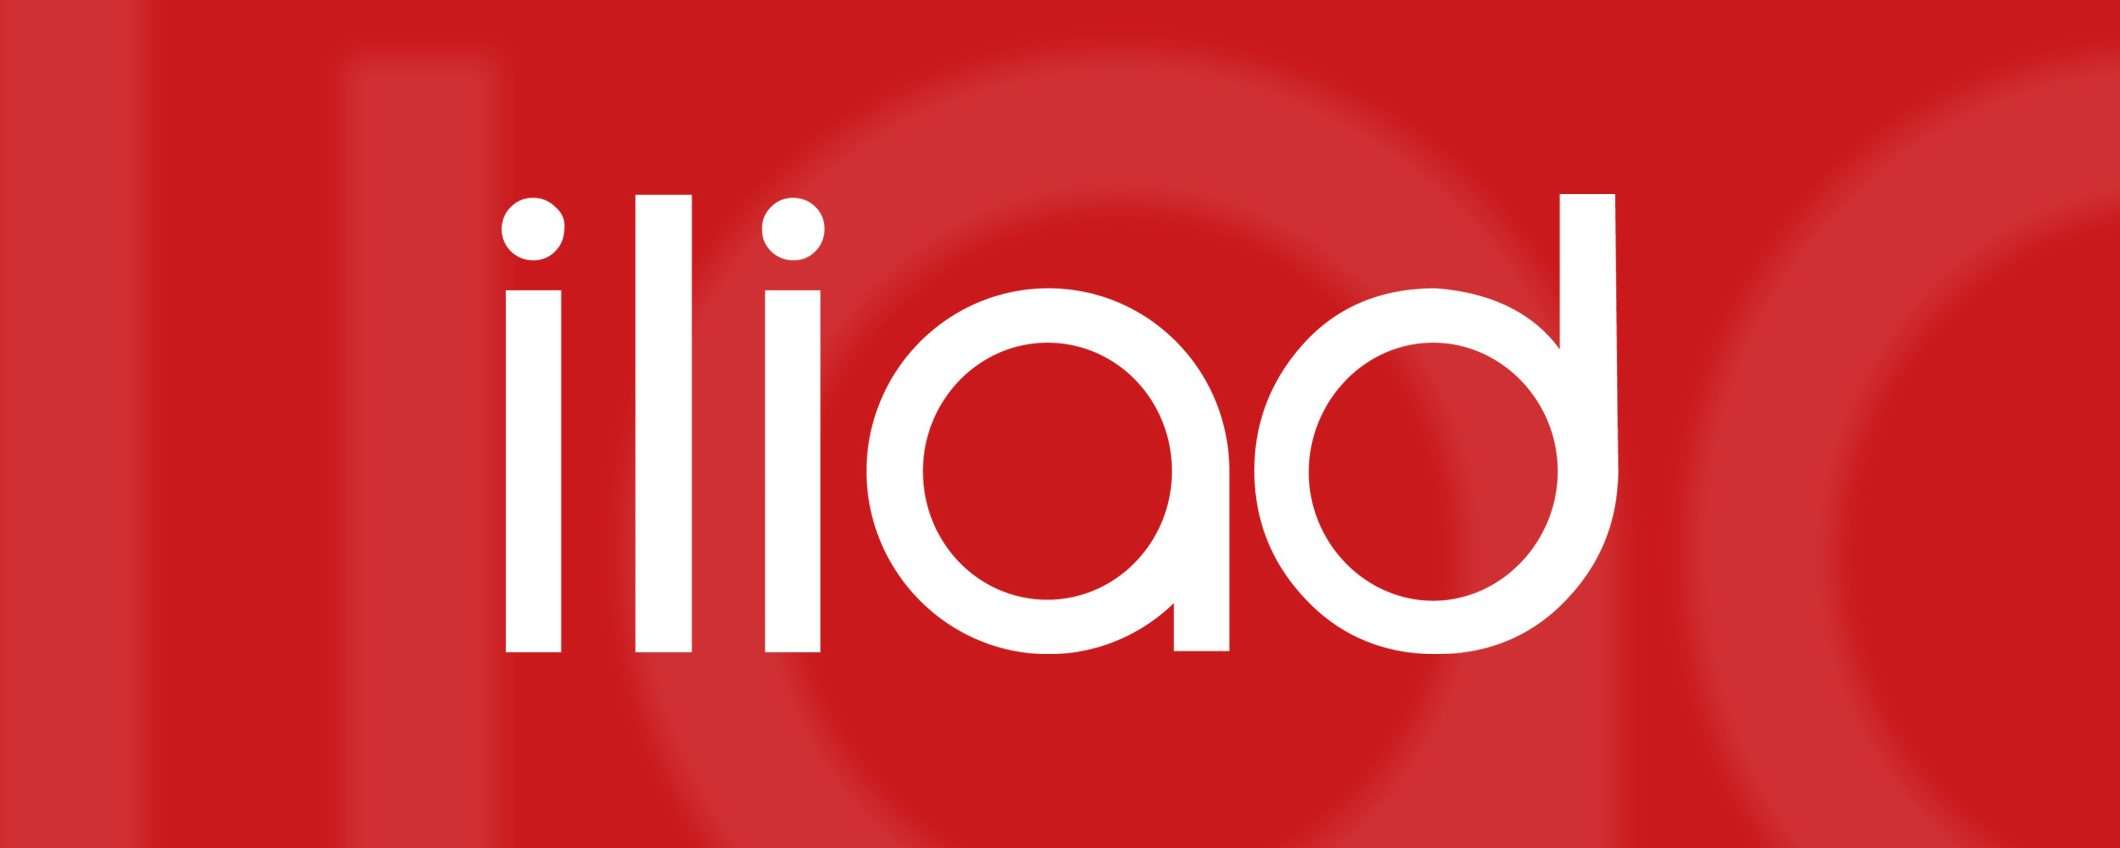 iliad e Vodafone: l'offerta per la fusione (update)